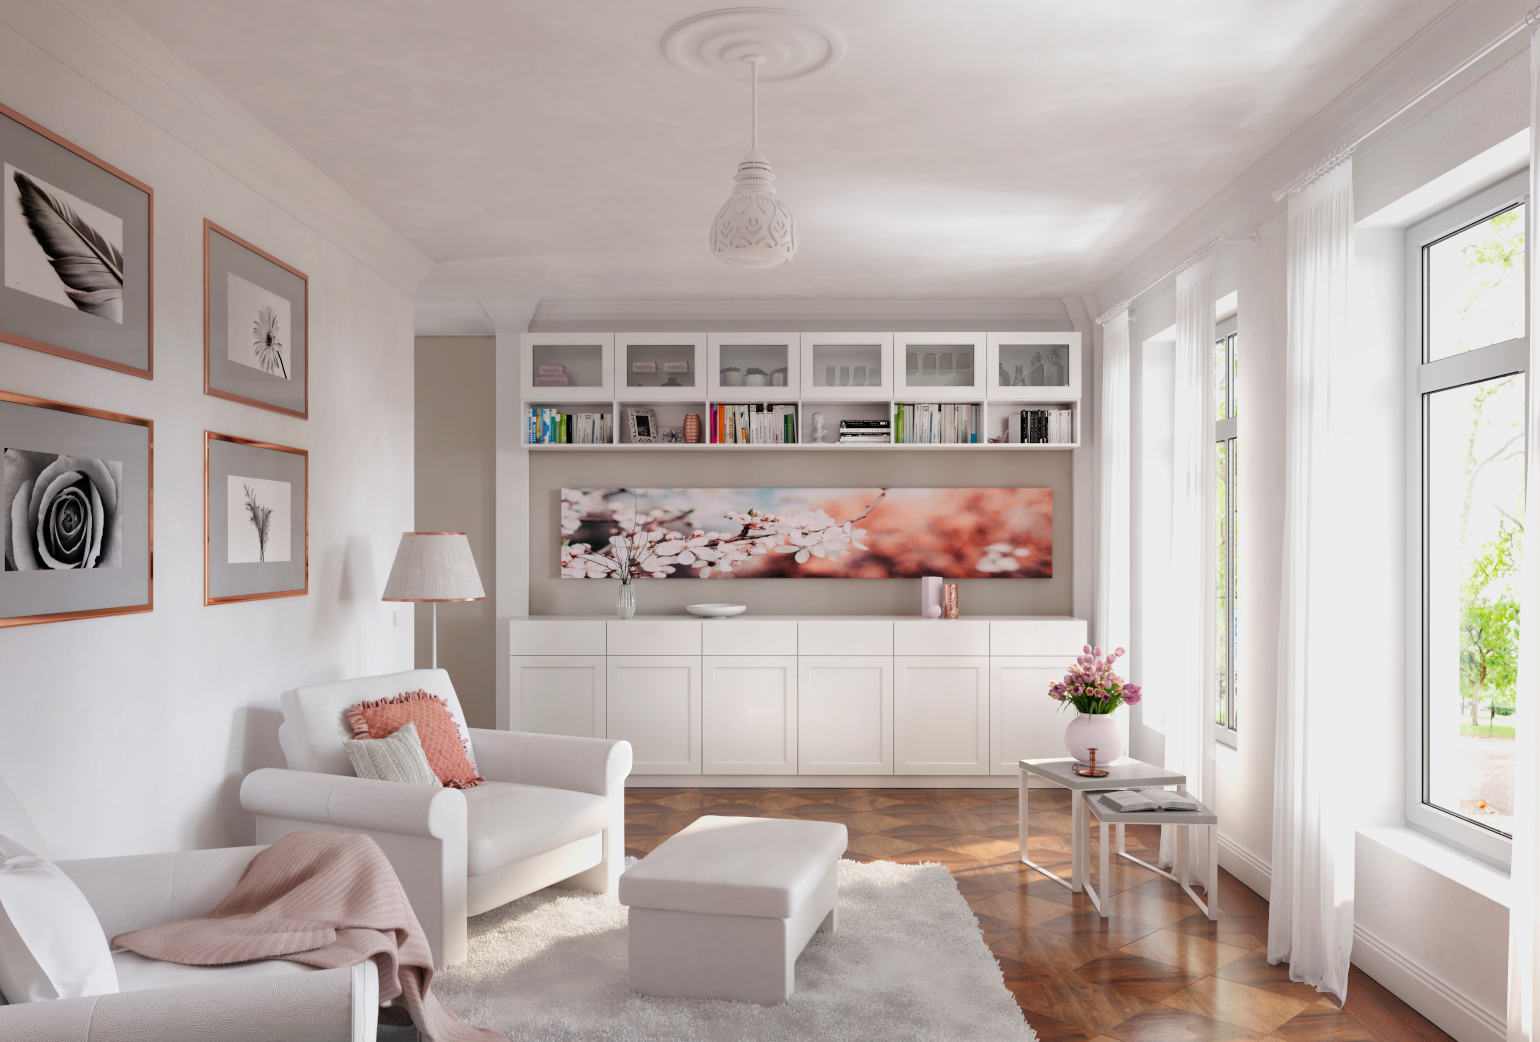 Wohnzimmer gemütlich dekorieren   deinSchrank.de